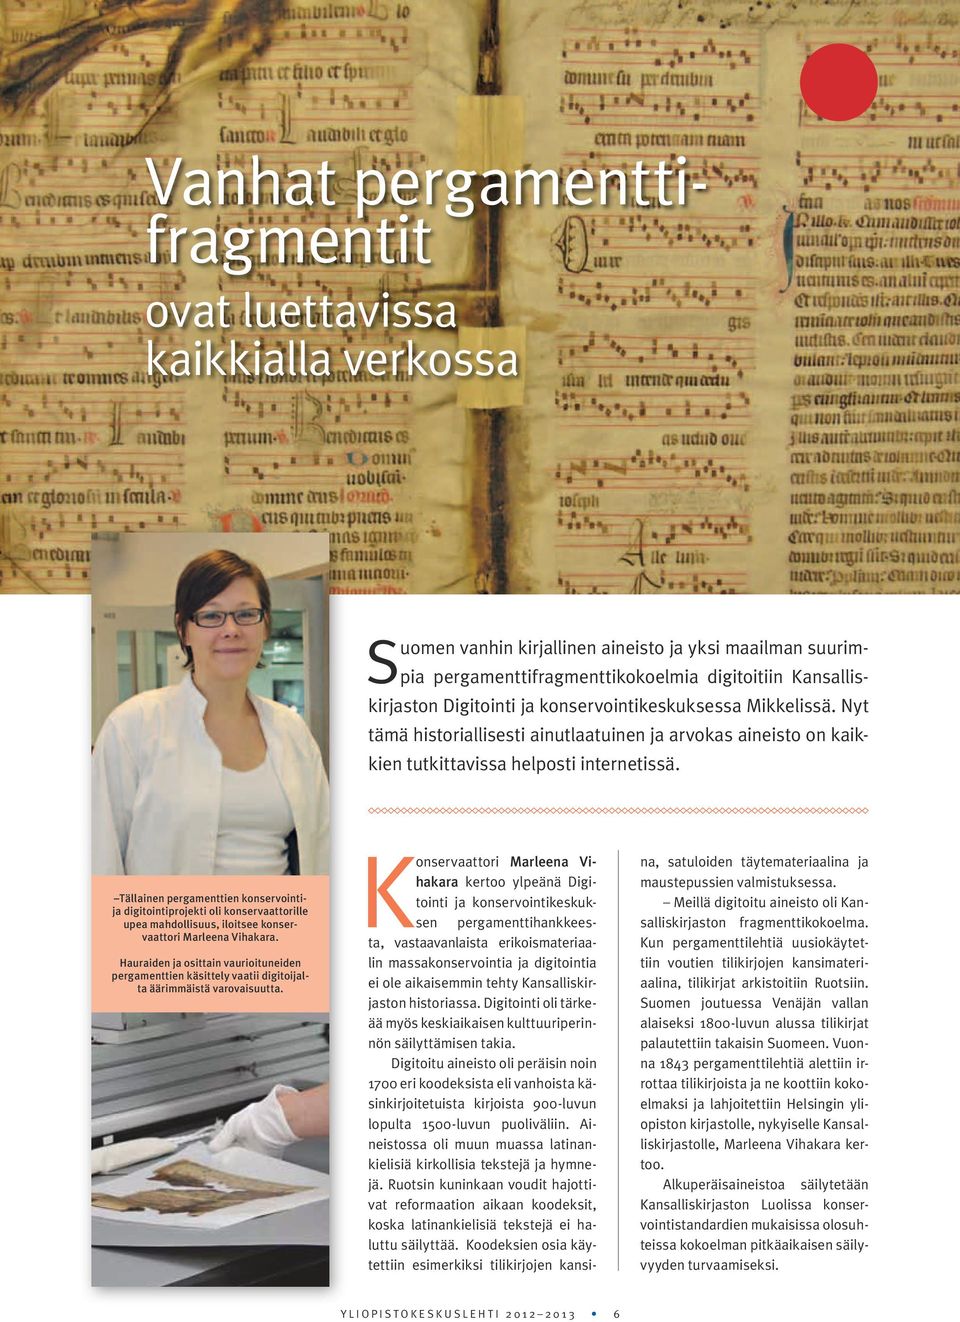 Tällainen pergamenttien konservointija digitointiprojekti oli konservaattorille upea mahdollisuus, iloitsee konservaattori Marleena Vihakara.